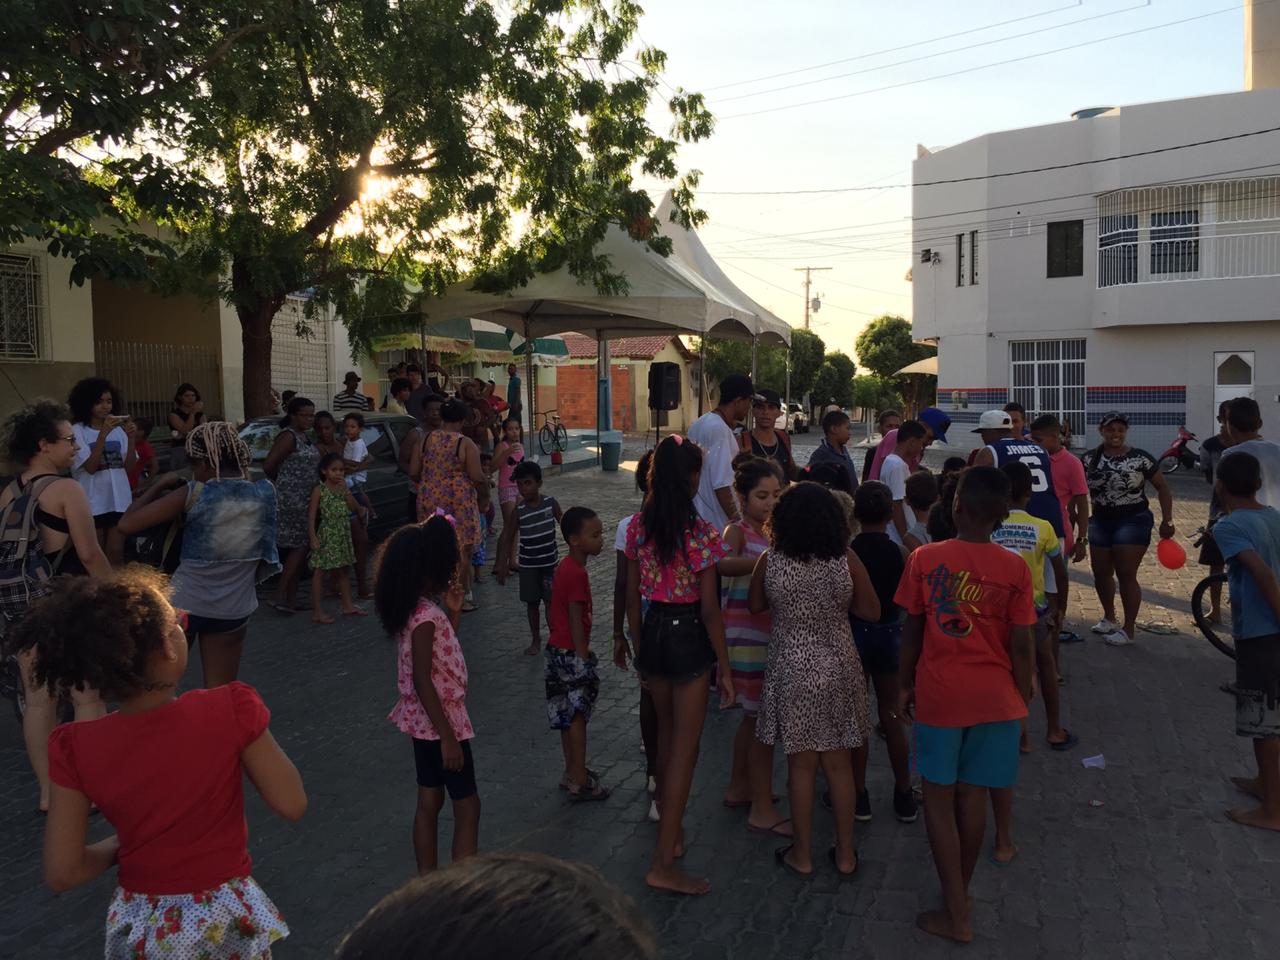 Grupo realiza ação do Dia das Crianças em Guanambi